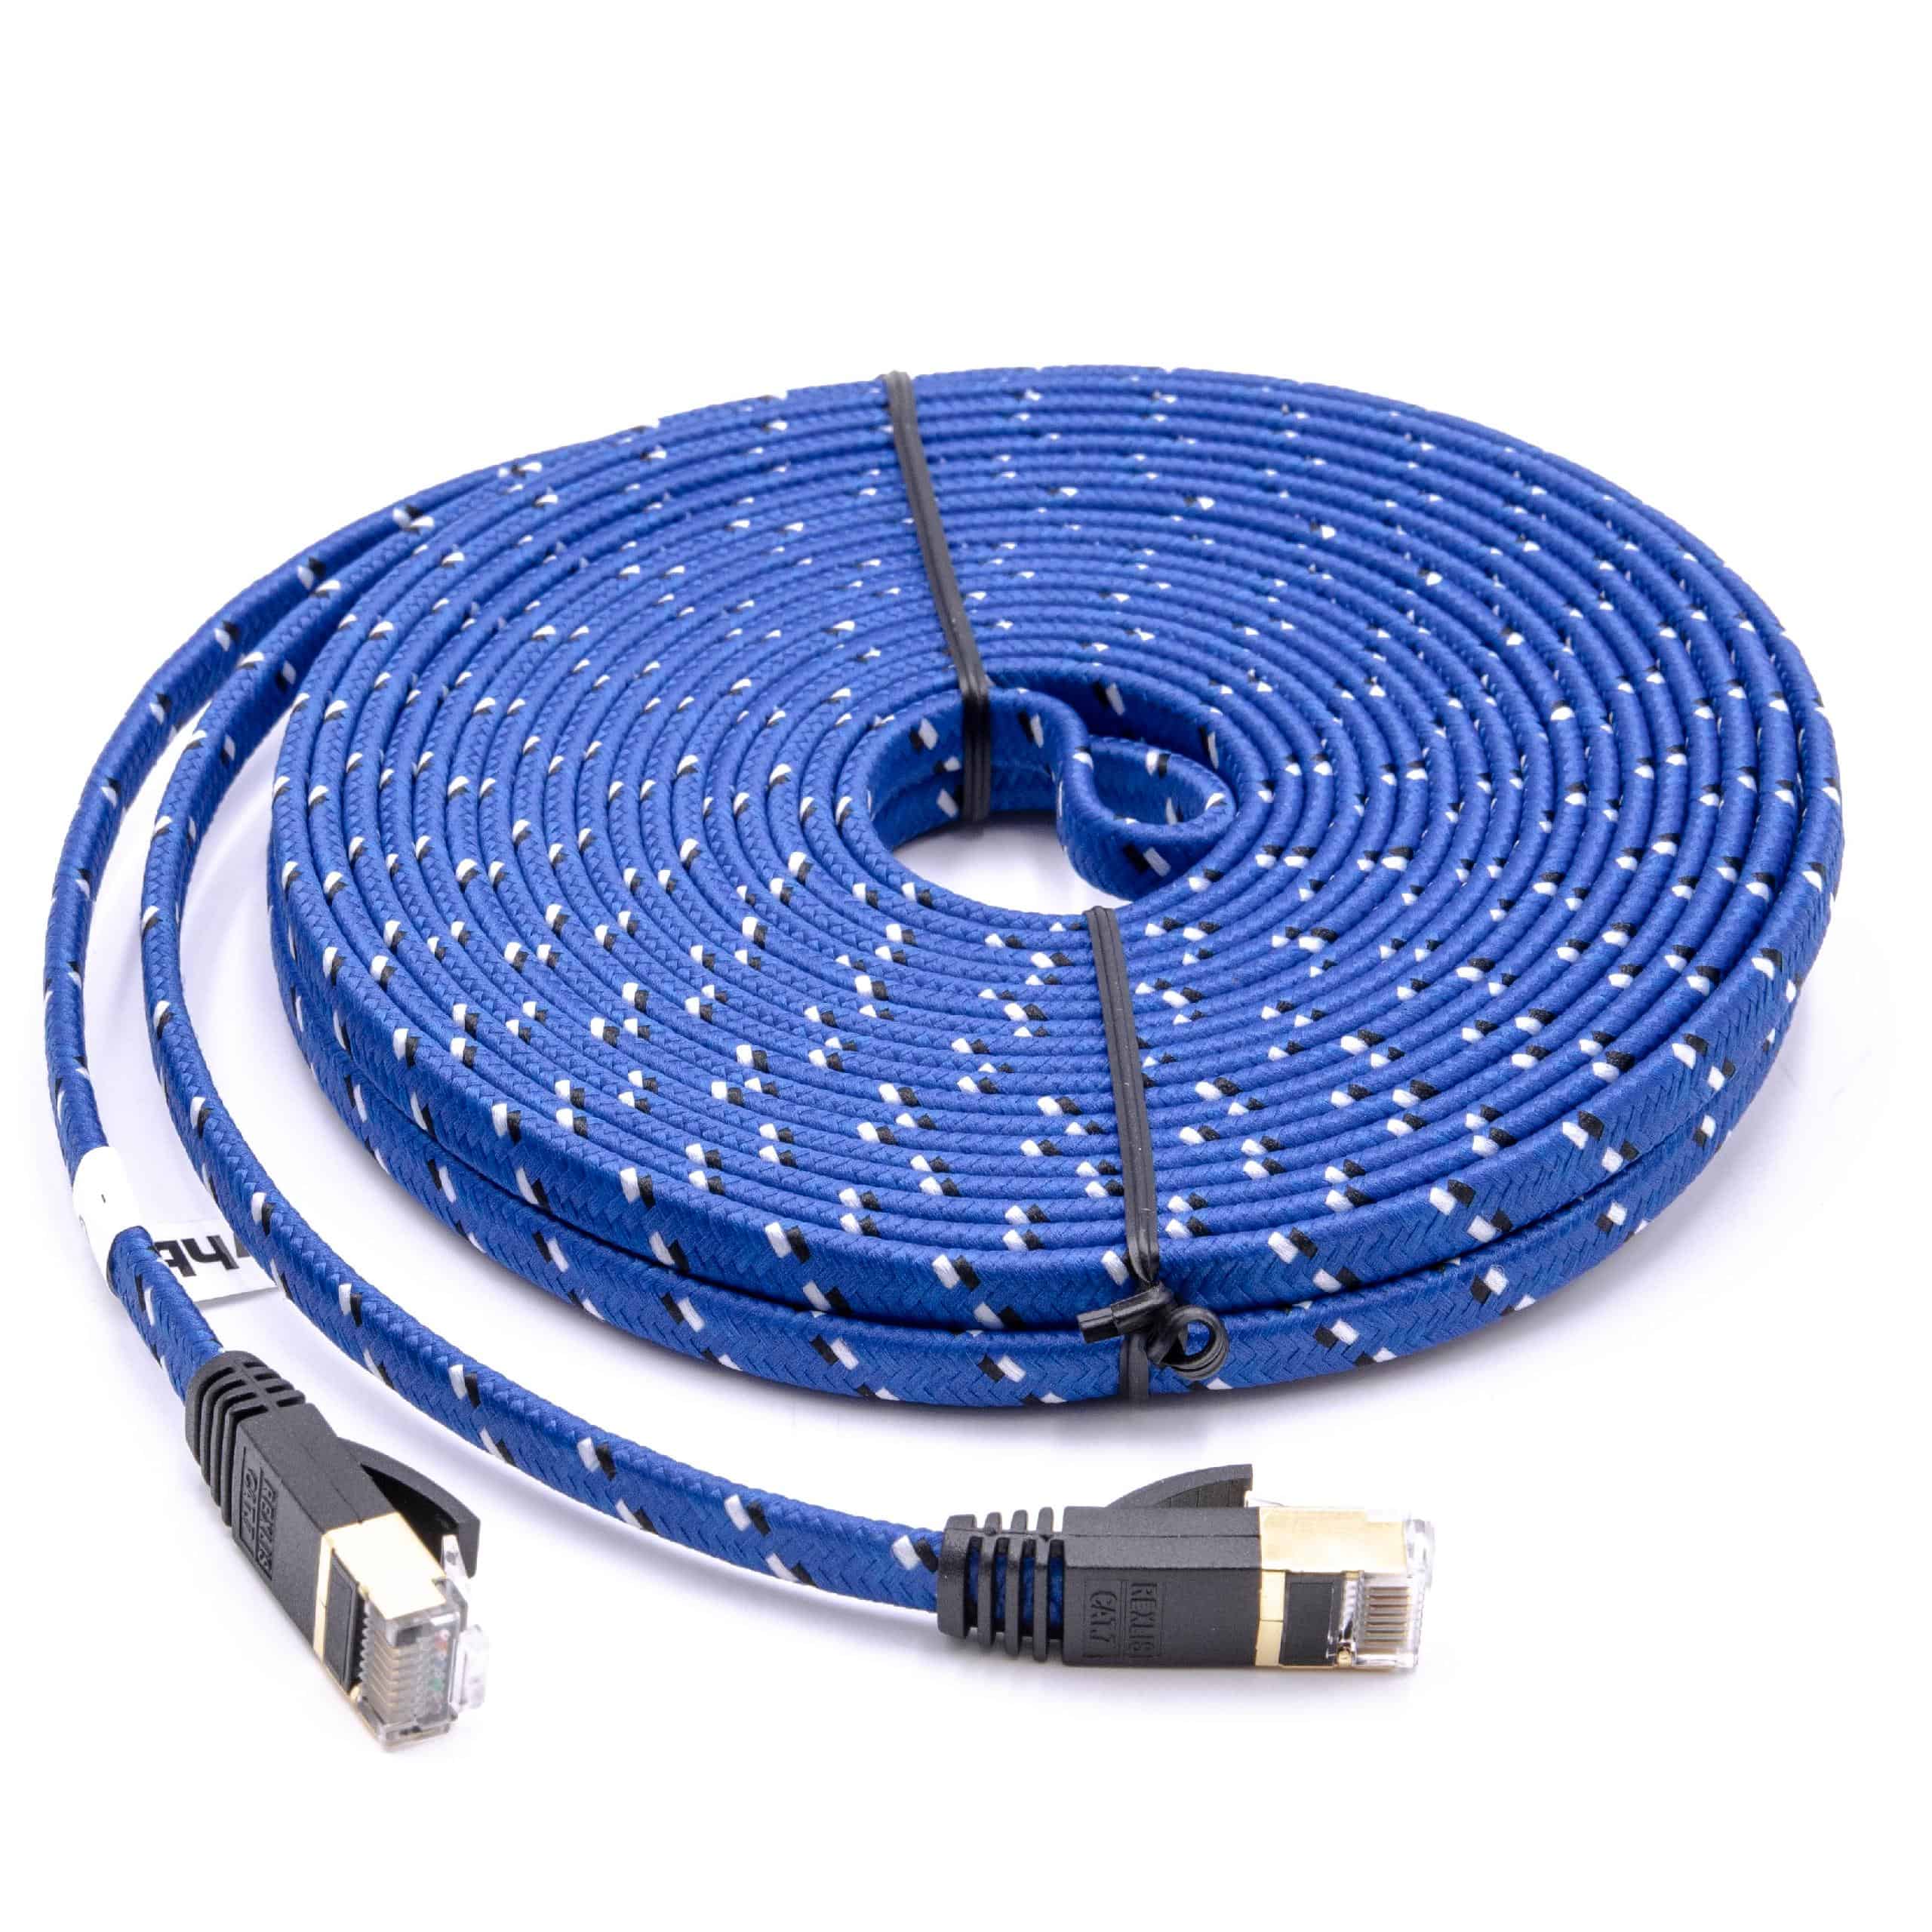 Cable de red de Ethernet, LAN, cable patch Cat7 10m azul cable plano de tendido